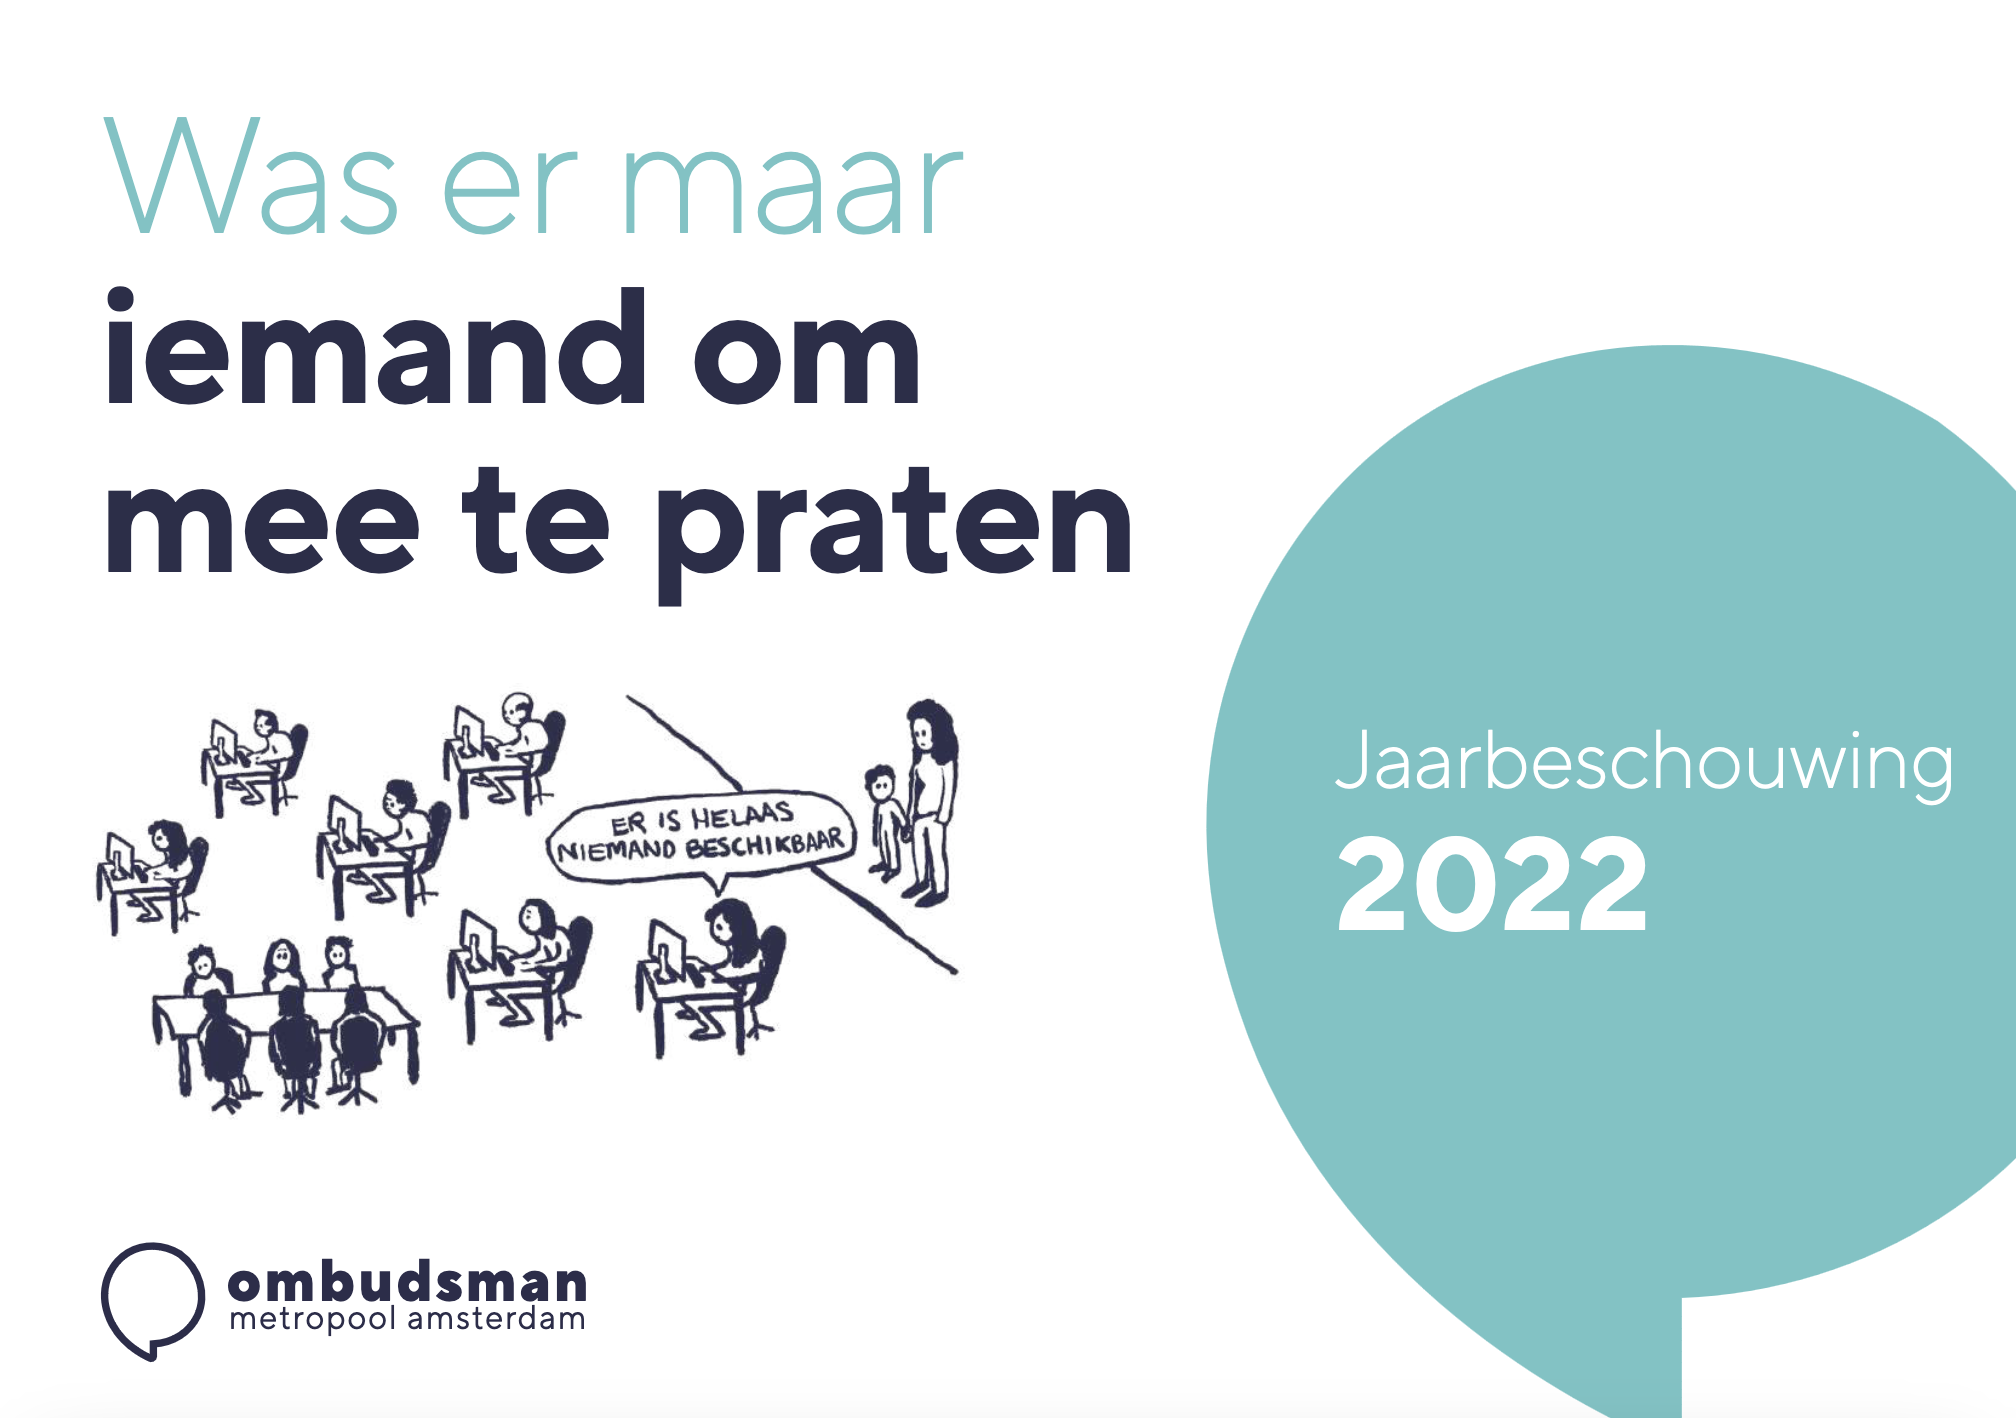 Jaarbeschouwing ombudsman 2022